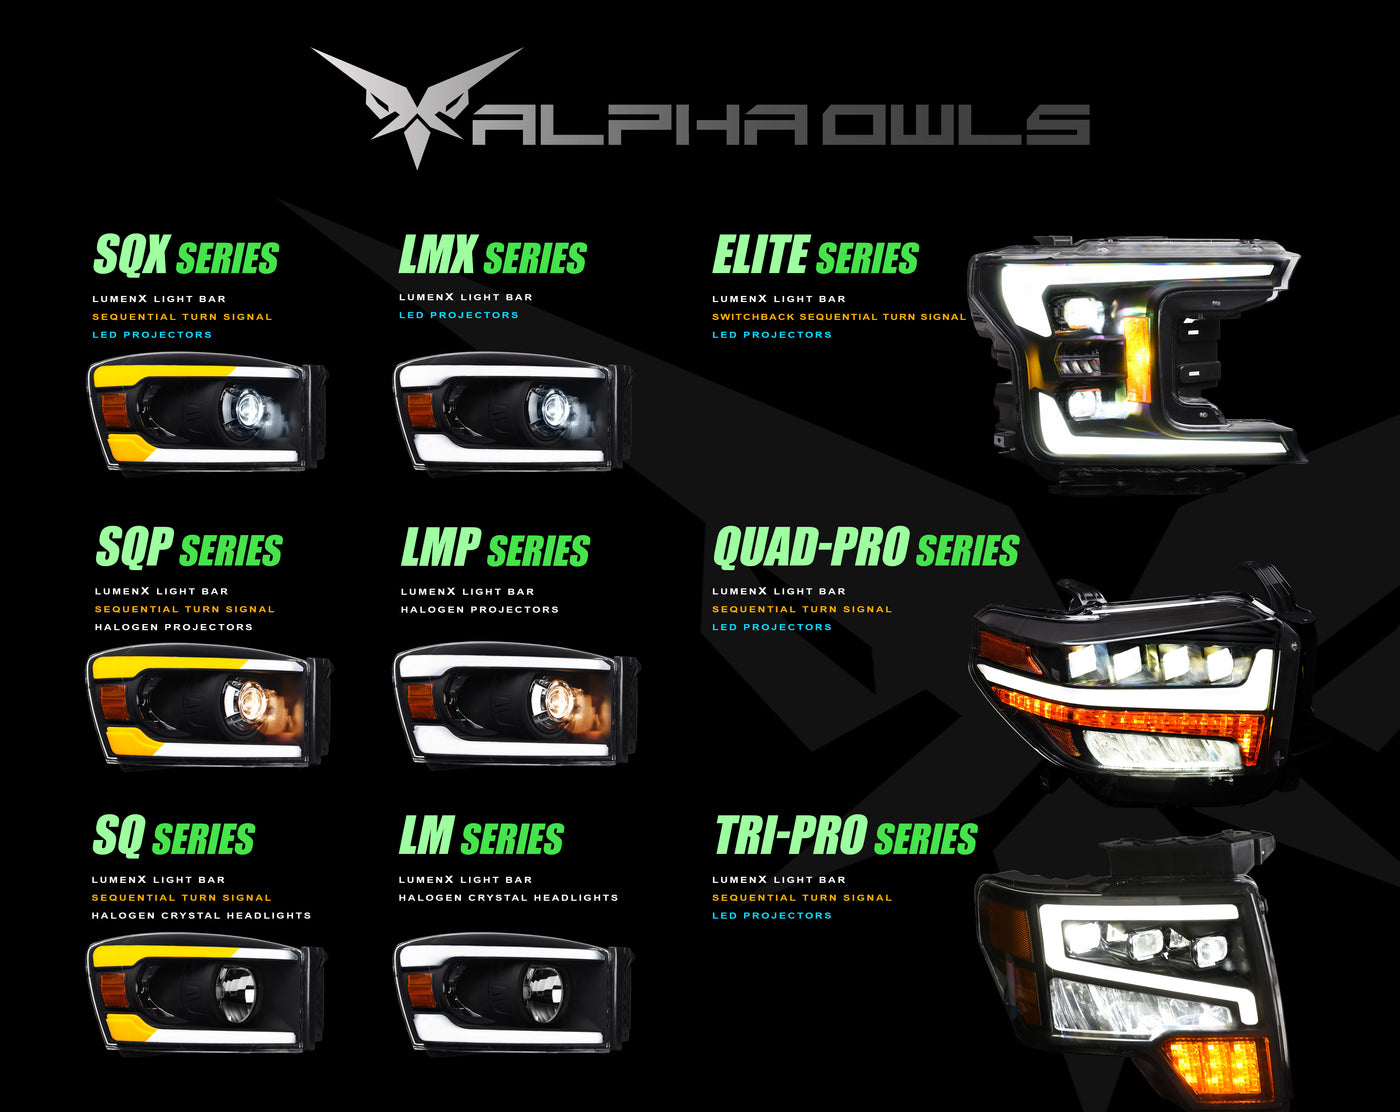 Alpha OwlsHeadlights, Dodge Ram 1500 Headlights, Projector Headlights, 2002-2005 Headlights